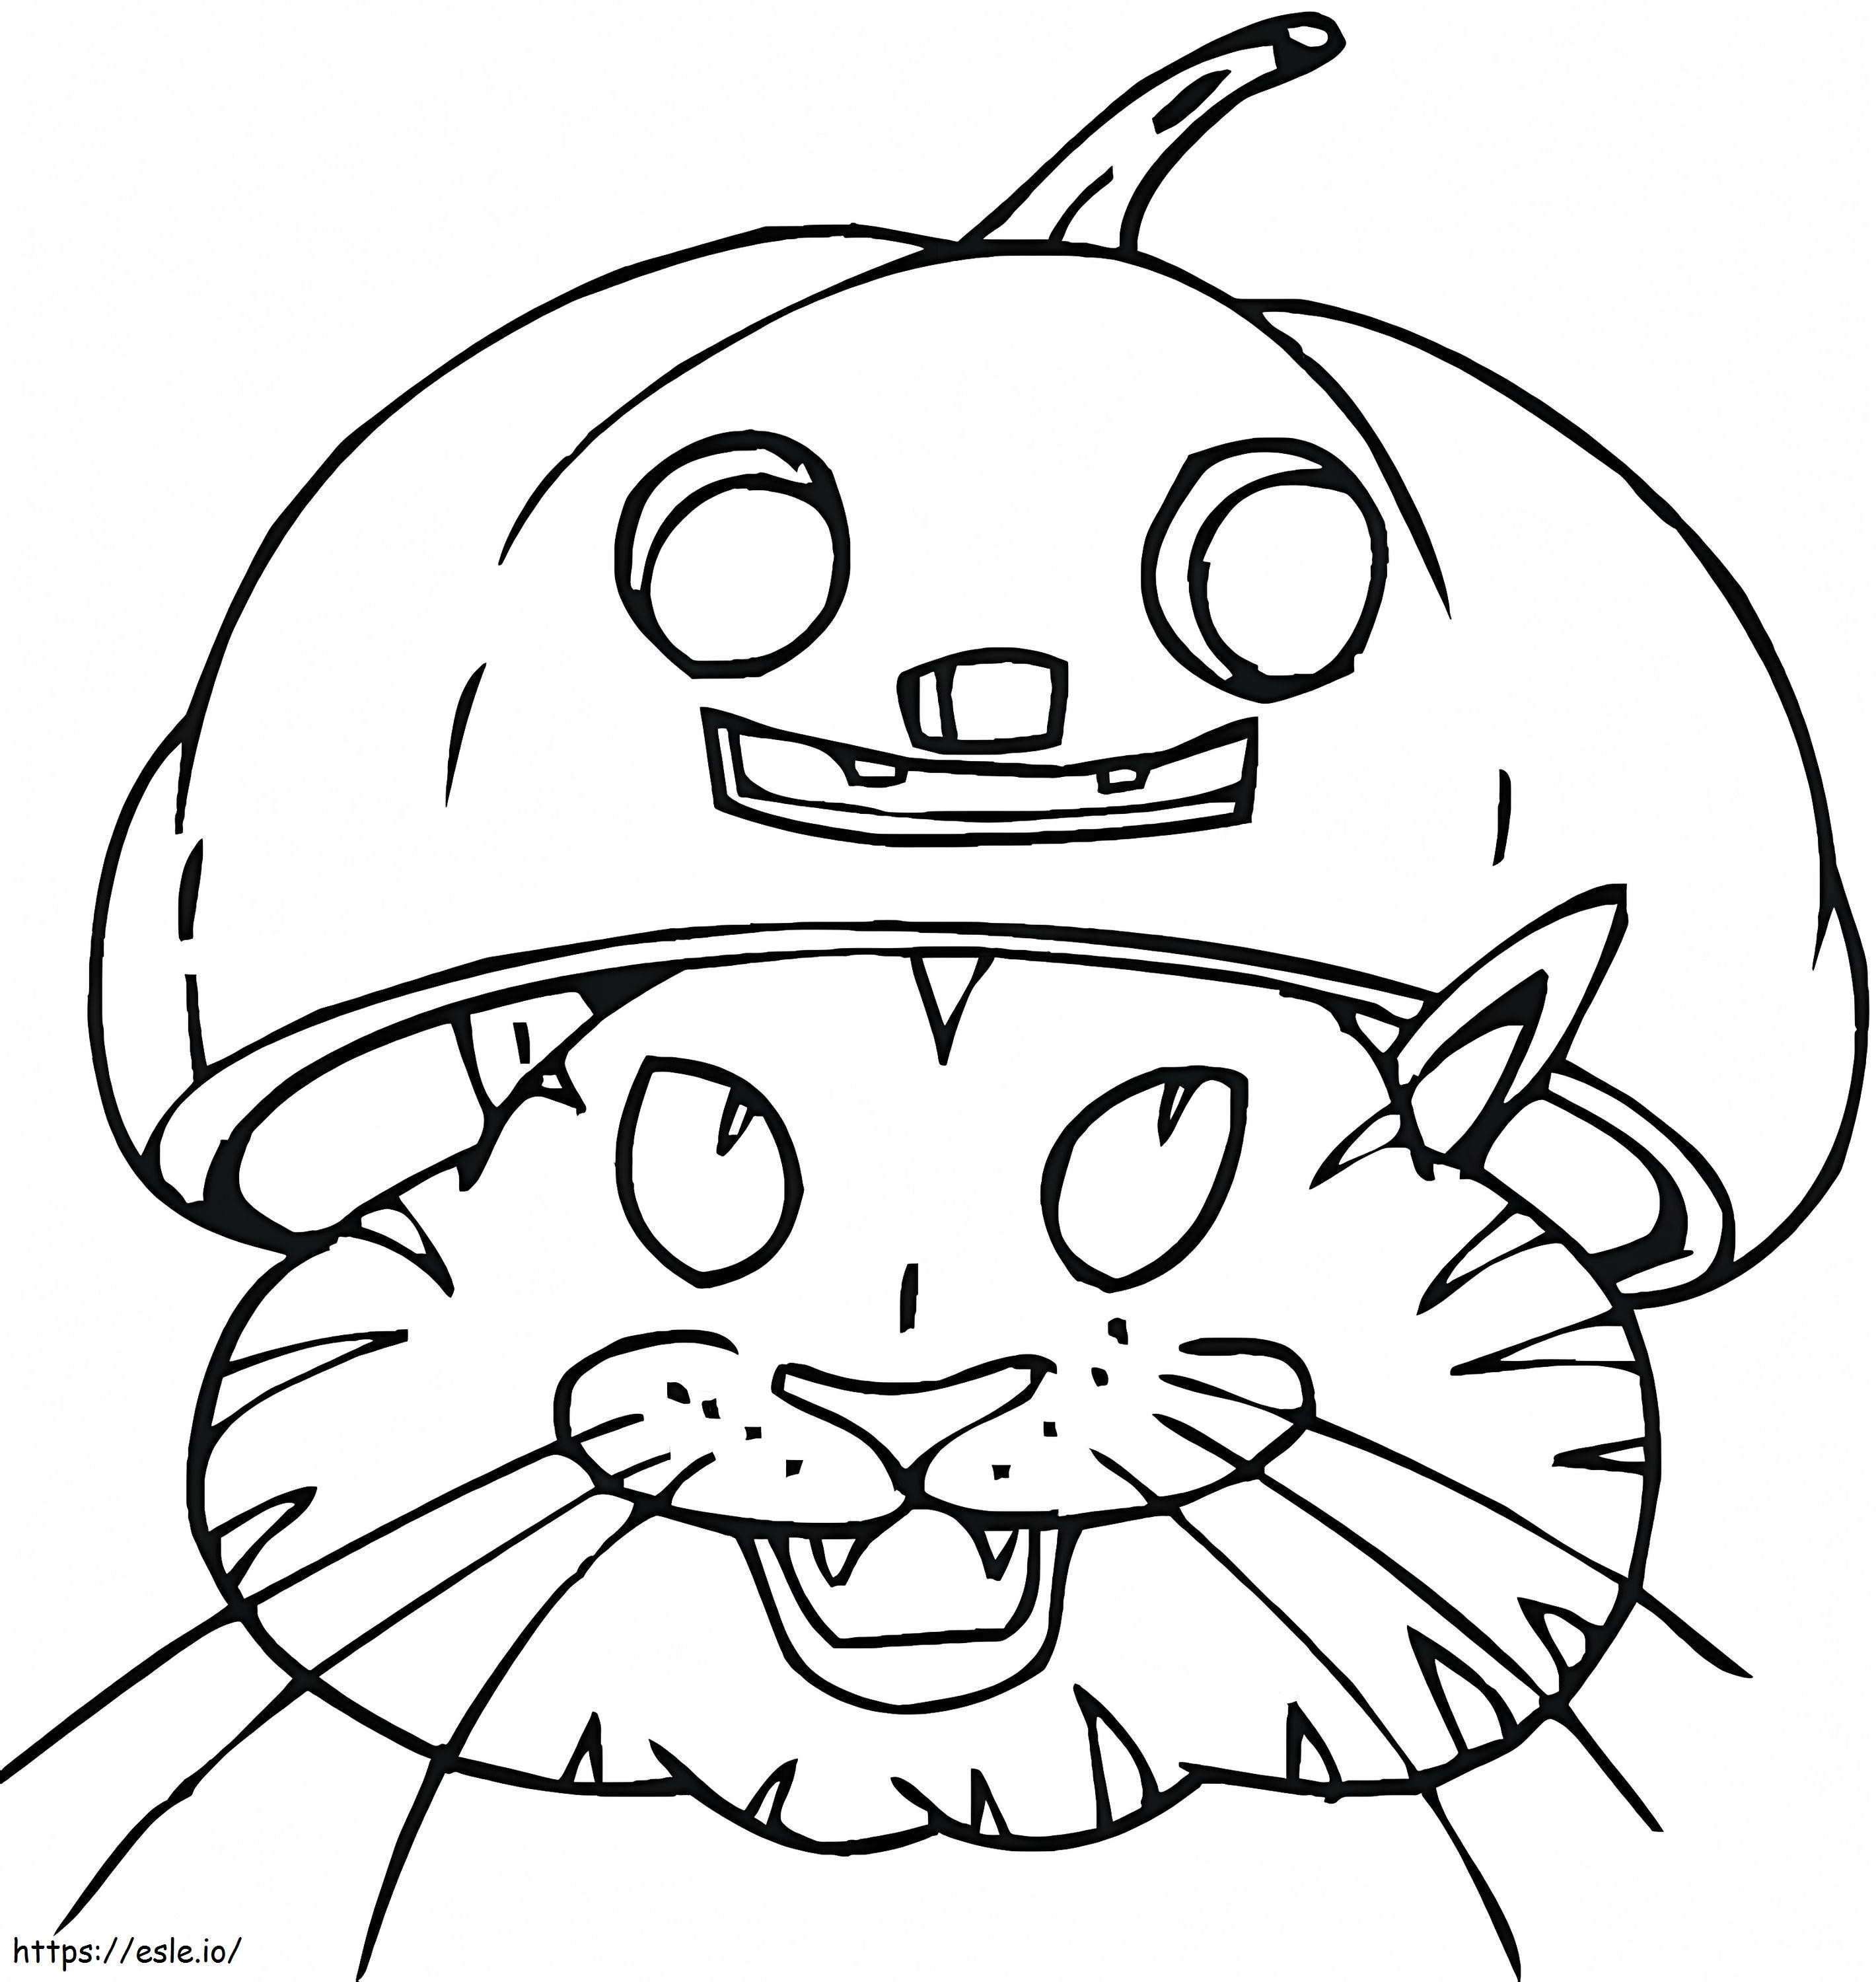 Halloweenowy Kot Z Dyniowym Kapeluszem kolorowanka